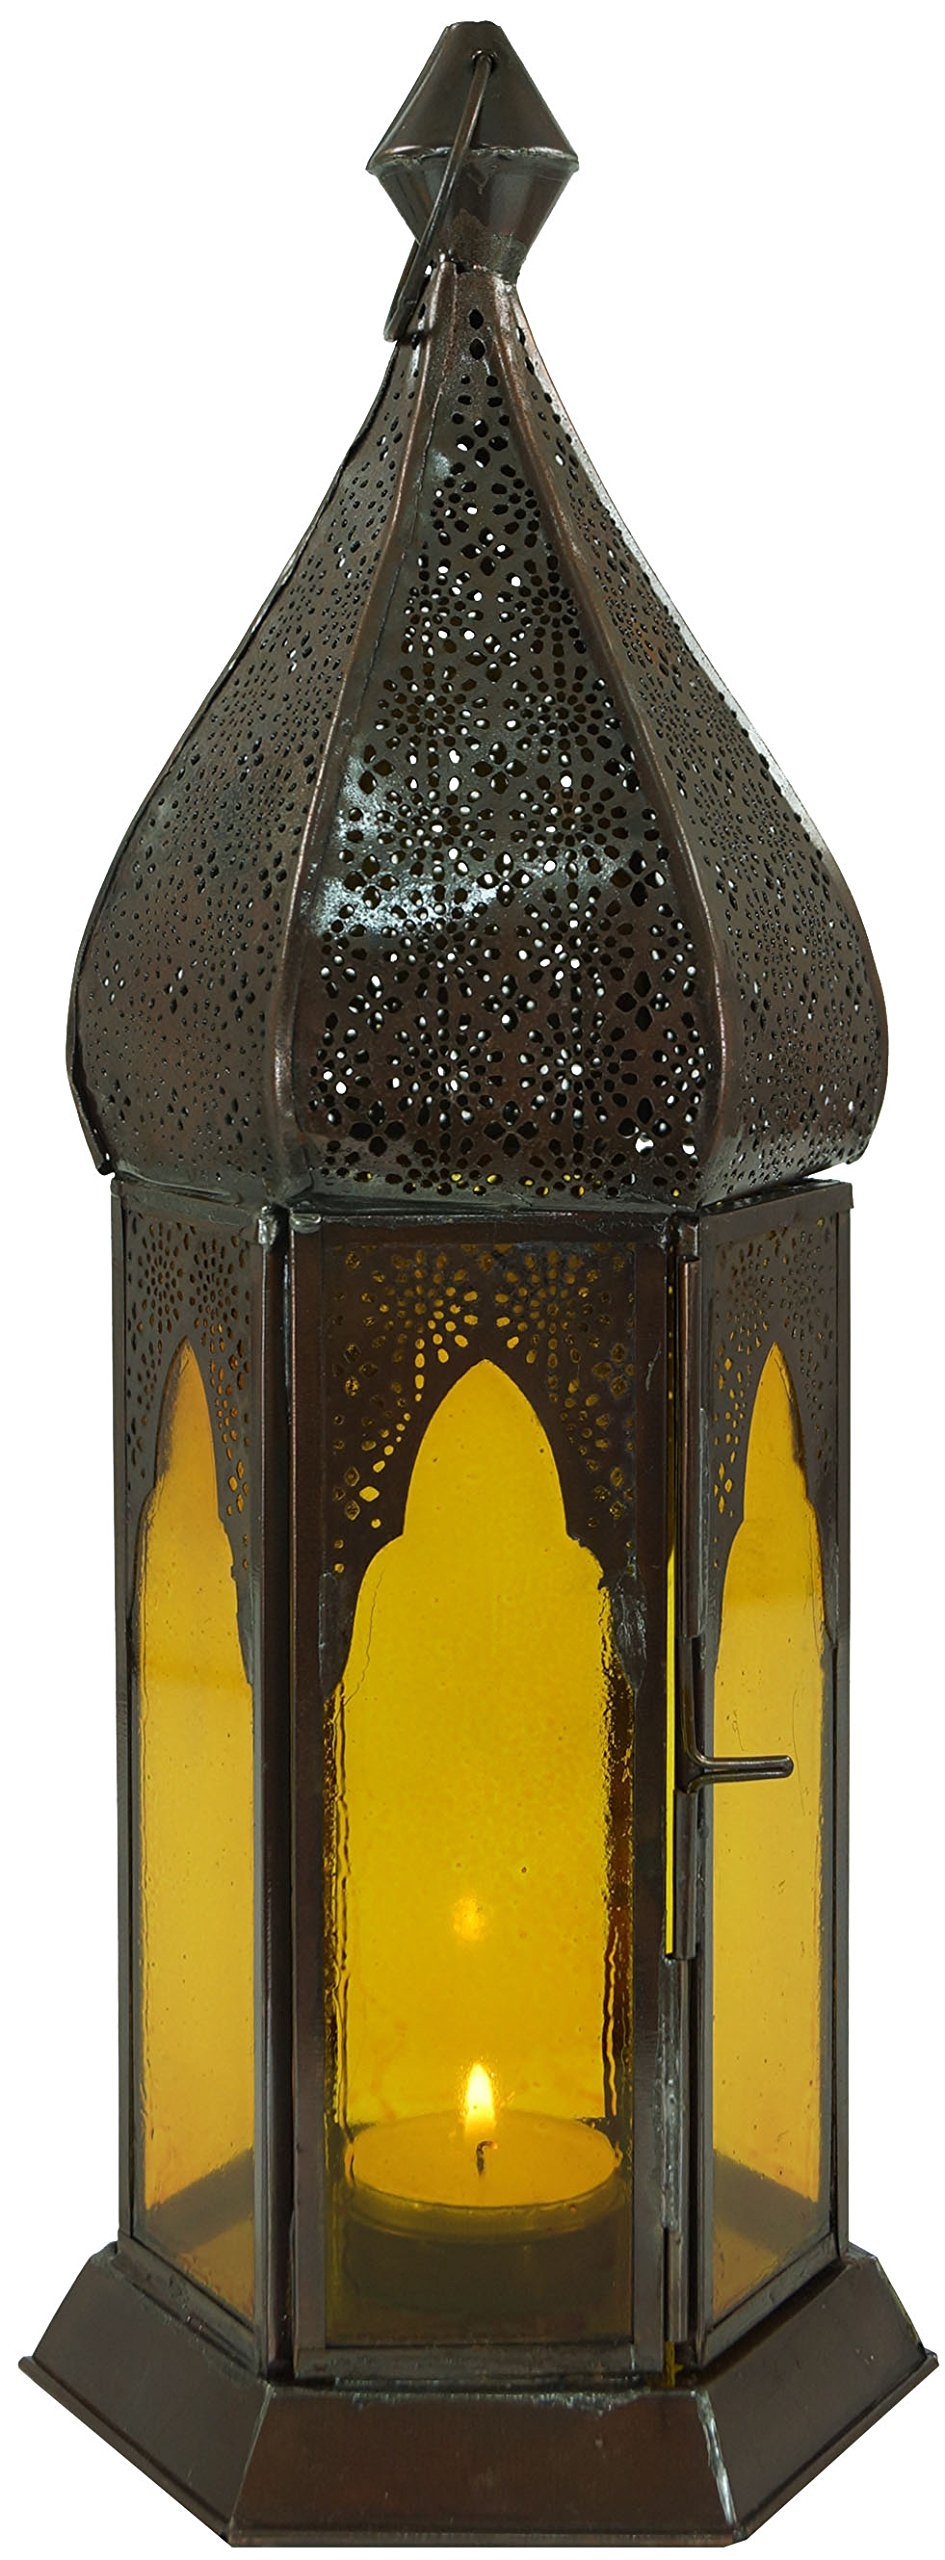 GURU SHOP Orientalische Metall/Glas Laterne in Marrokanischem Design, Windlicht, Gelb, Farbe: Gelb, 33x12x12 cm, Orientalische Laternen